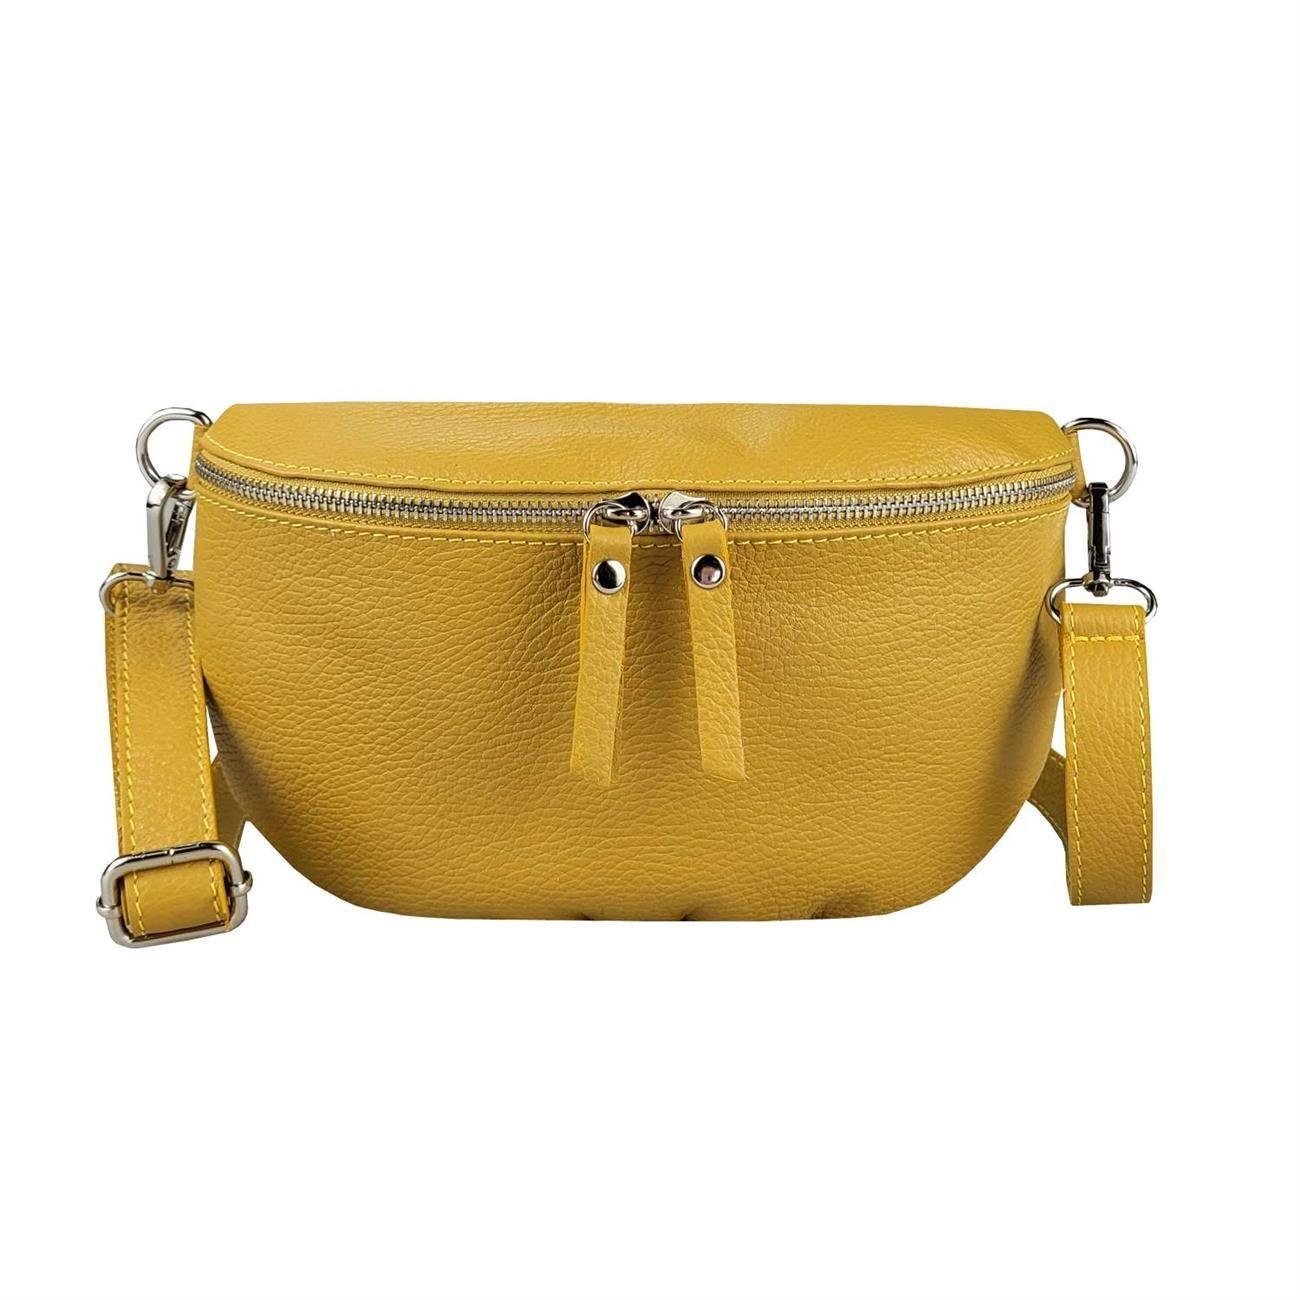 ITALYSHOP24 Bauchtasche Damen Leder Gürteltasche Hüfttasche CrossBody Bag, als Schultertasche, CrossOver, Umhängetasche tragbar